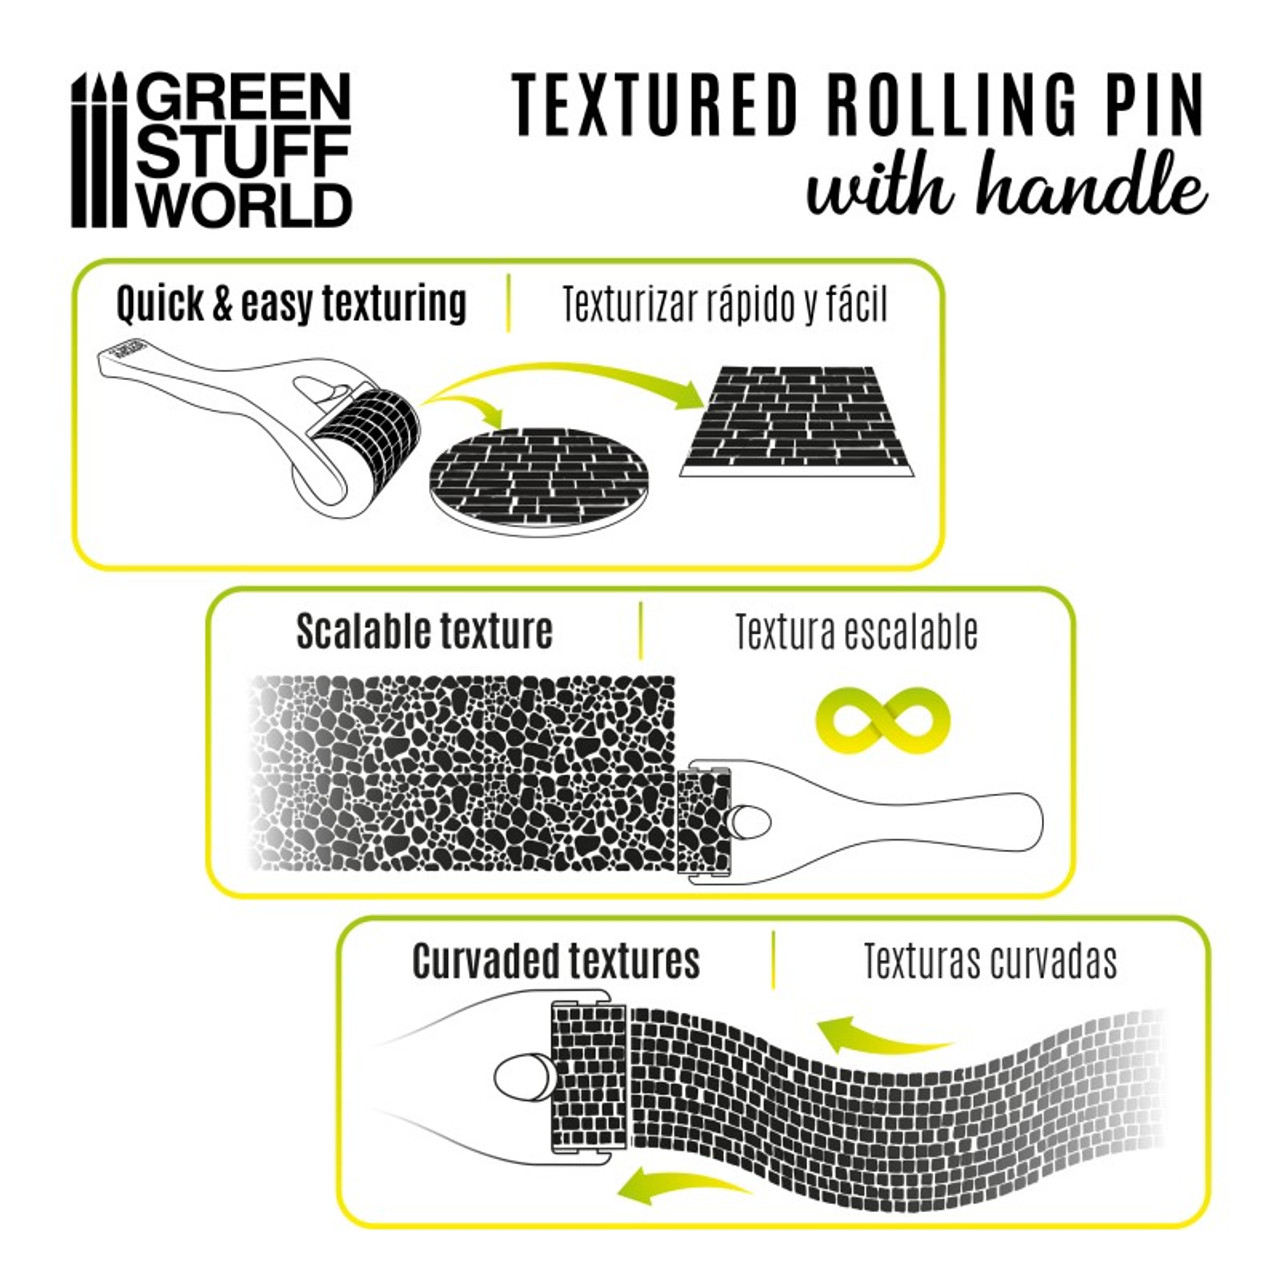 Rollin pin with Handle - Cobblestone Small